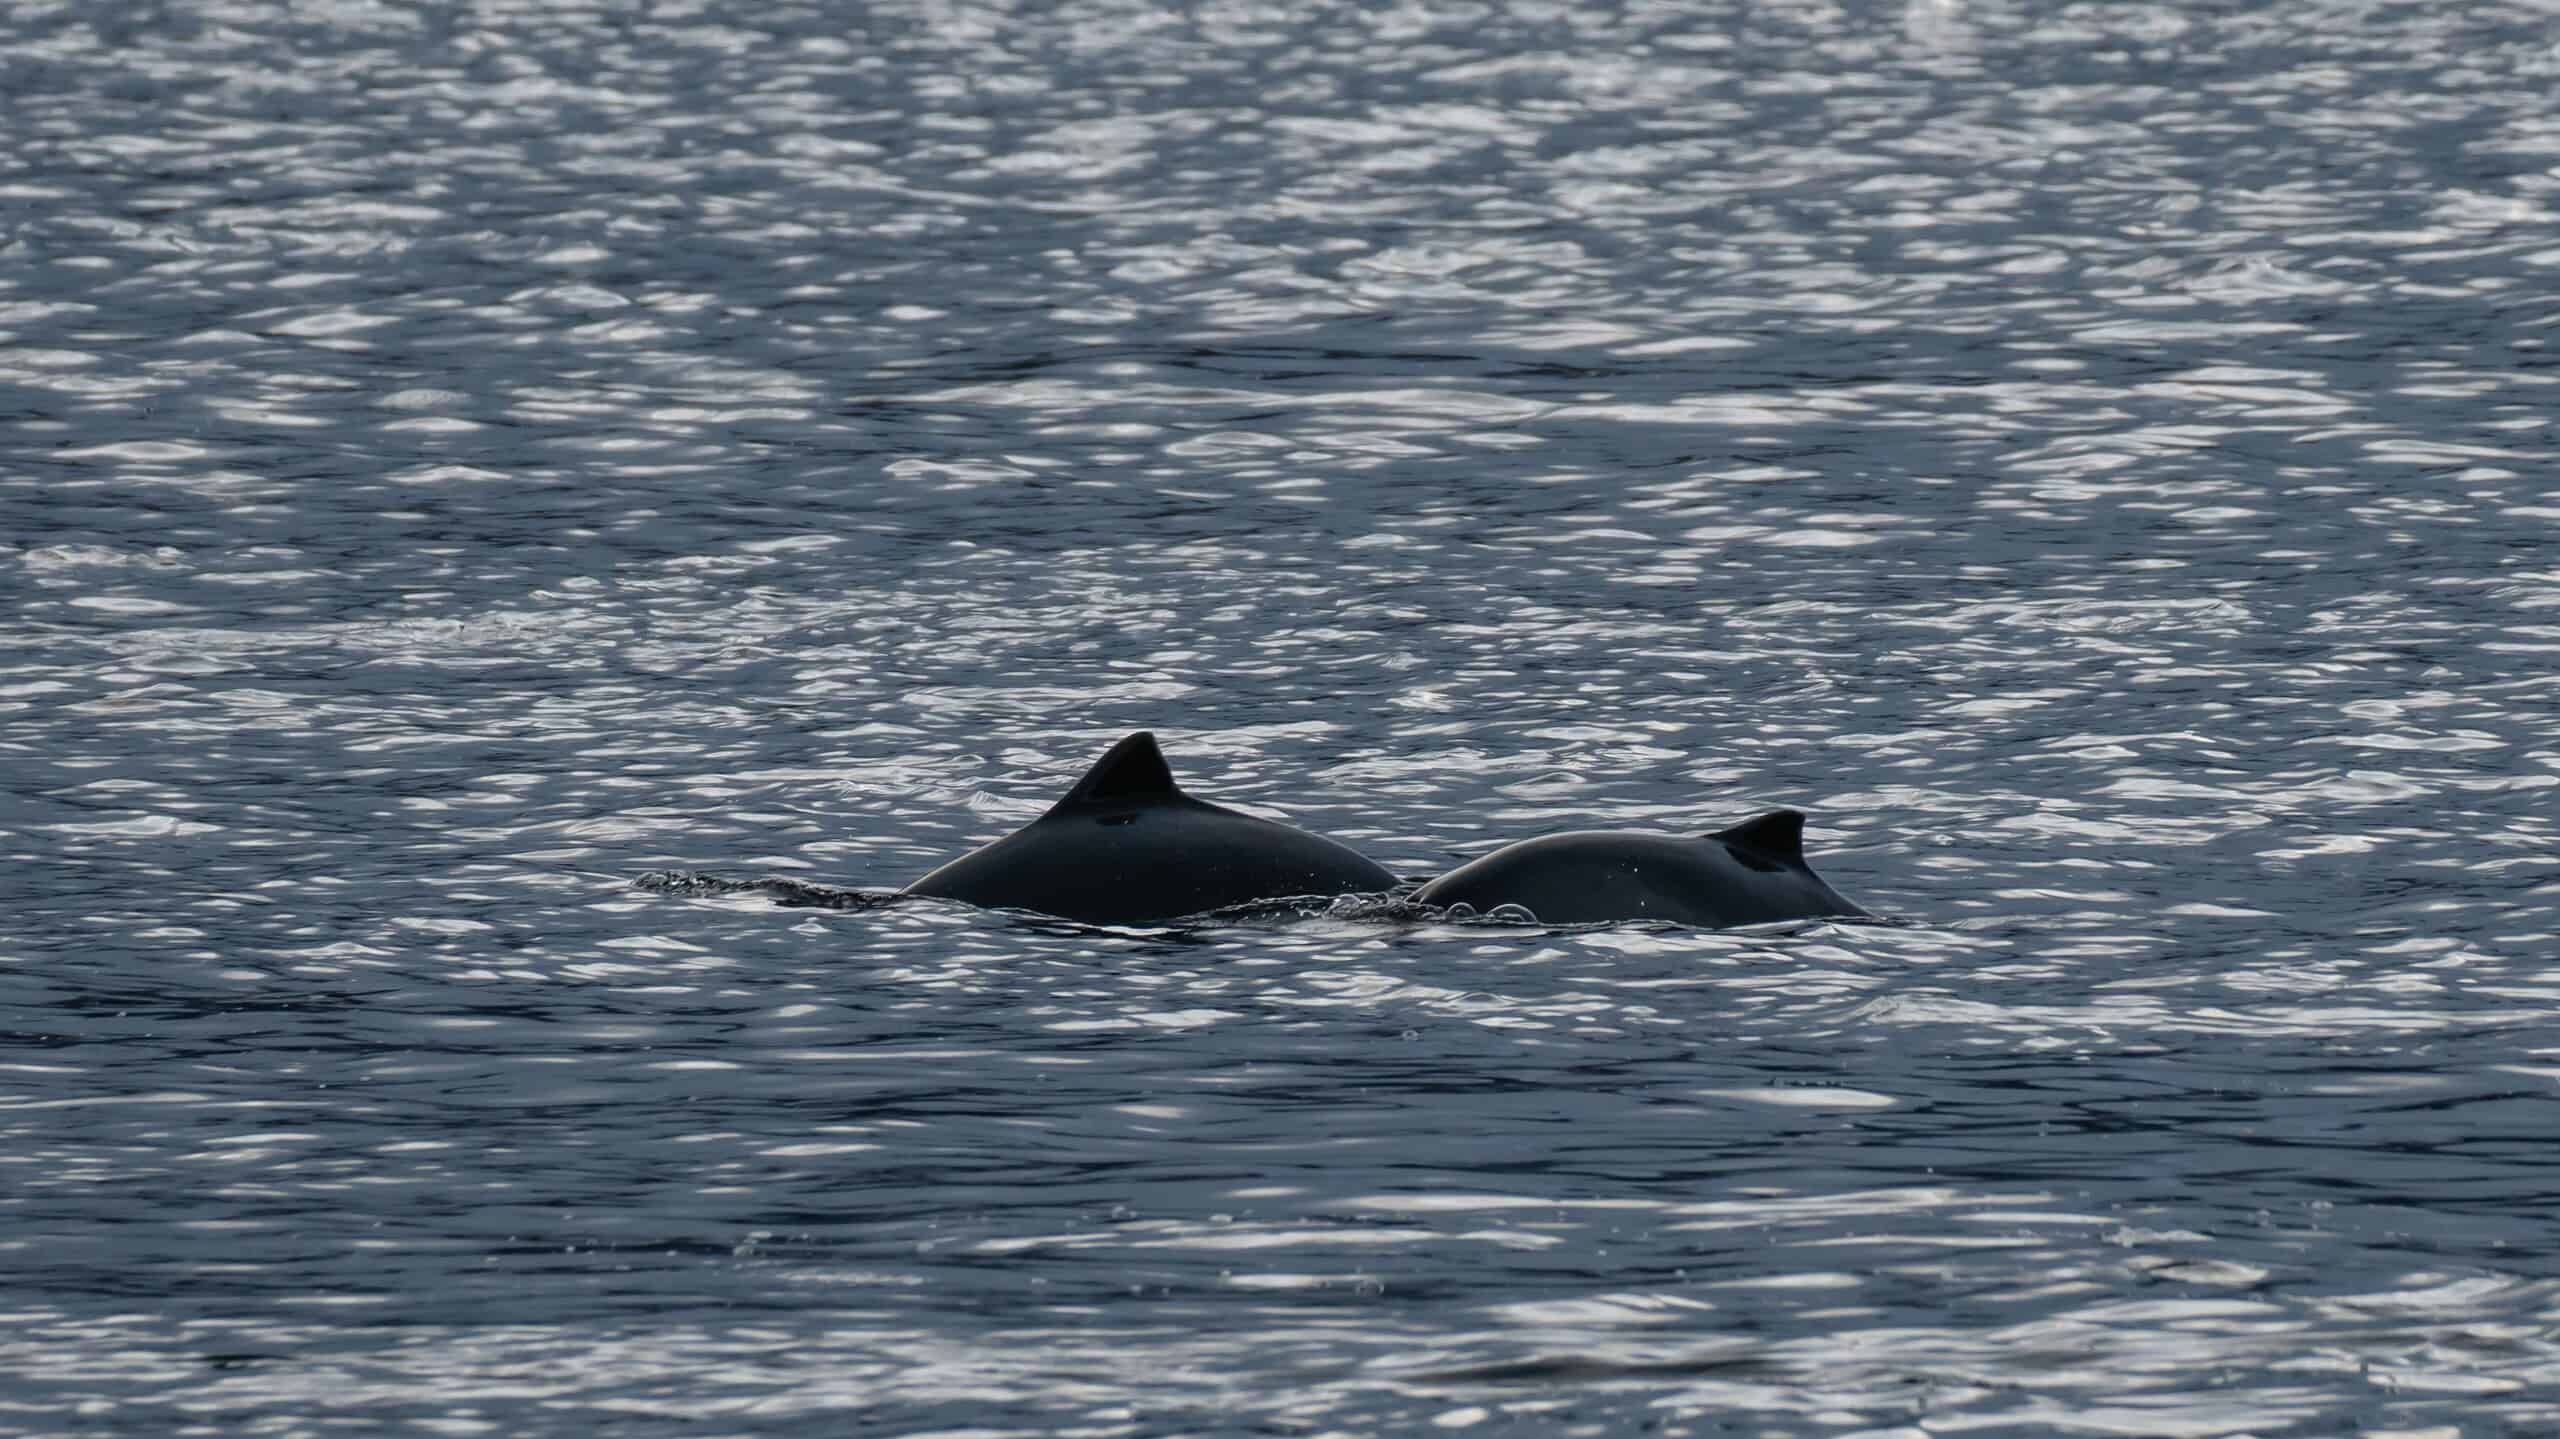 Two porpoises surfacing in the Atlantic ocean in Norway